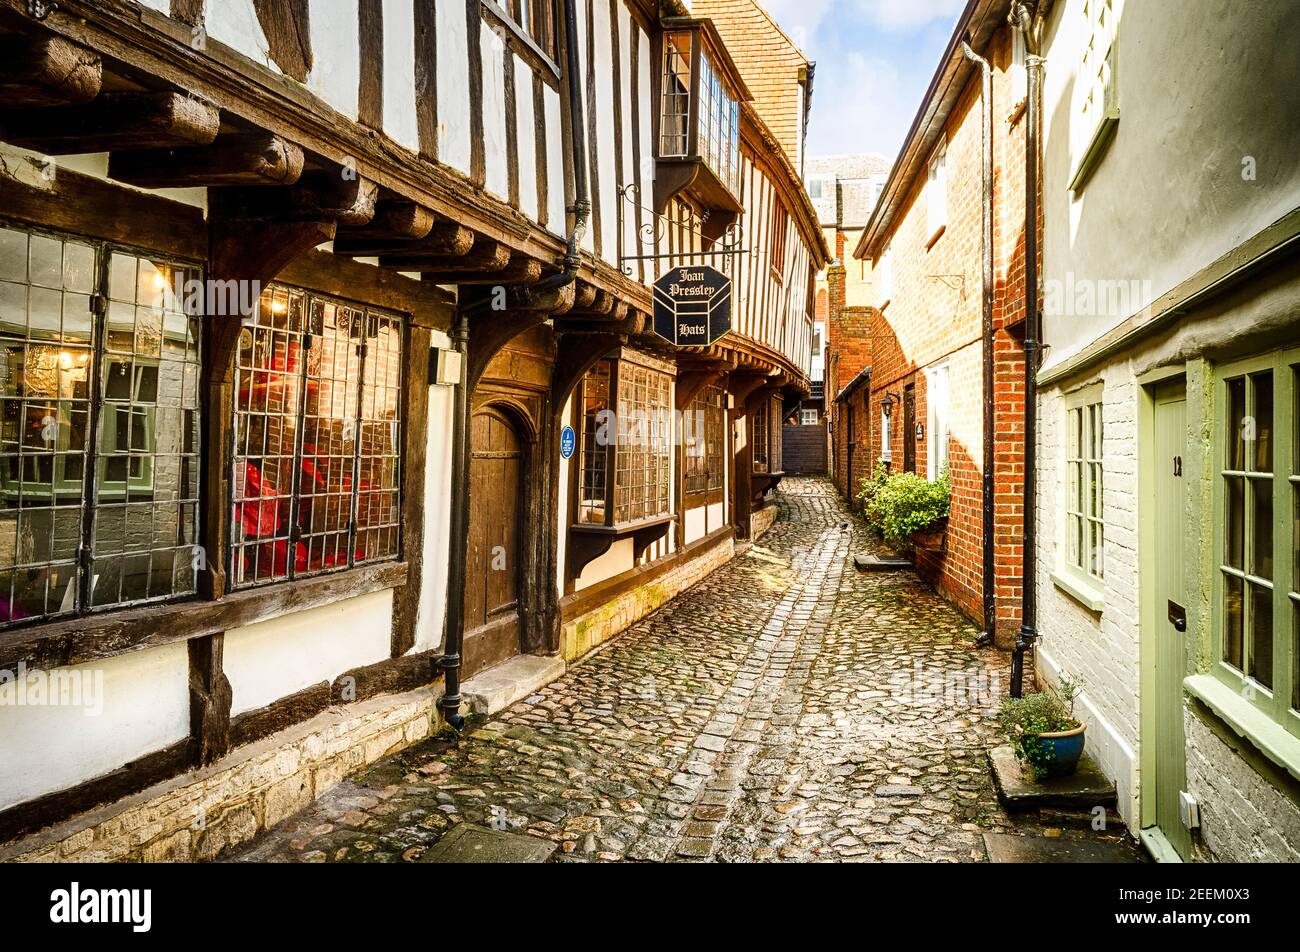 Historische St. John's Alley in Devizes Wiltshirre England Großbritannien zeigt Alte gepflasterte Gasse und Fachwerkgebäude aus dem 16. Jahrhundert Stockfoto